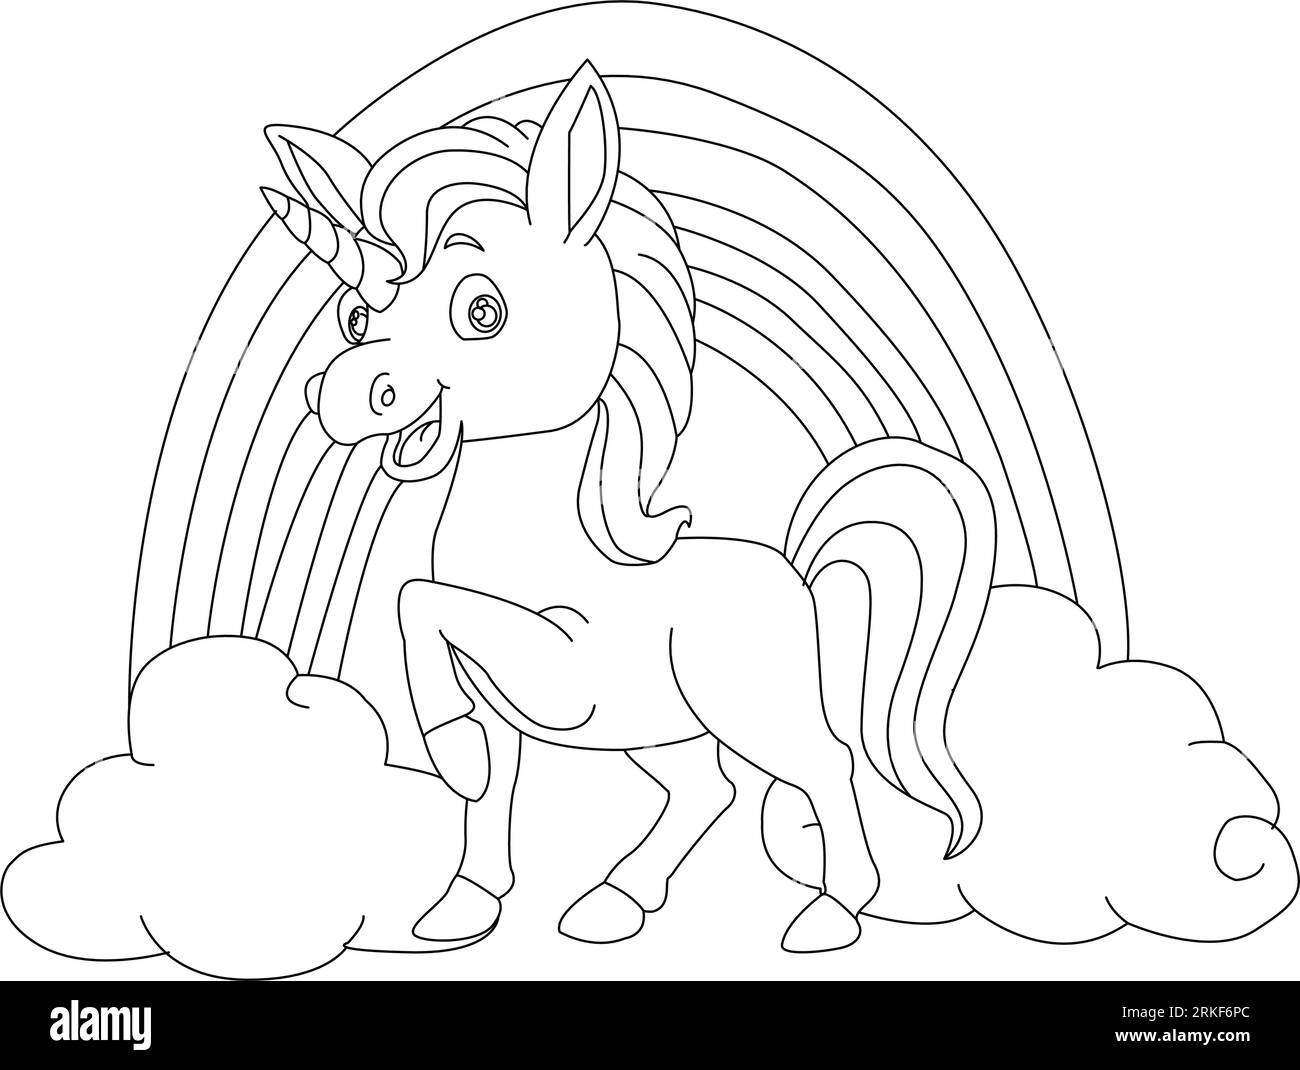 Bellos dibujos de unicornios para colorear con los niños